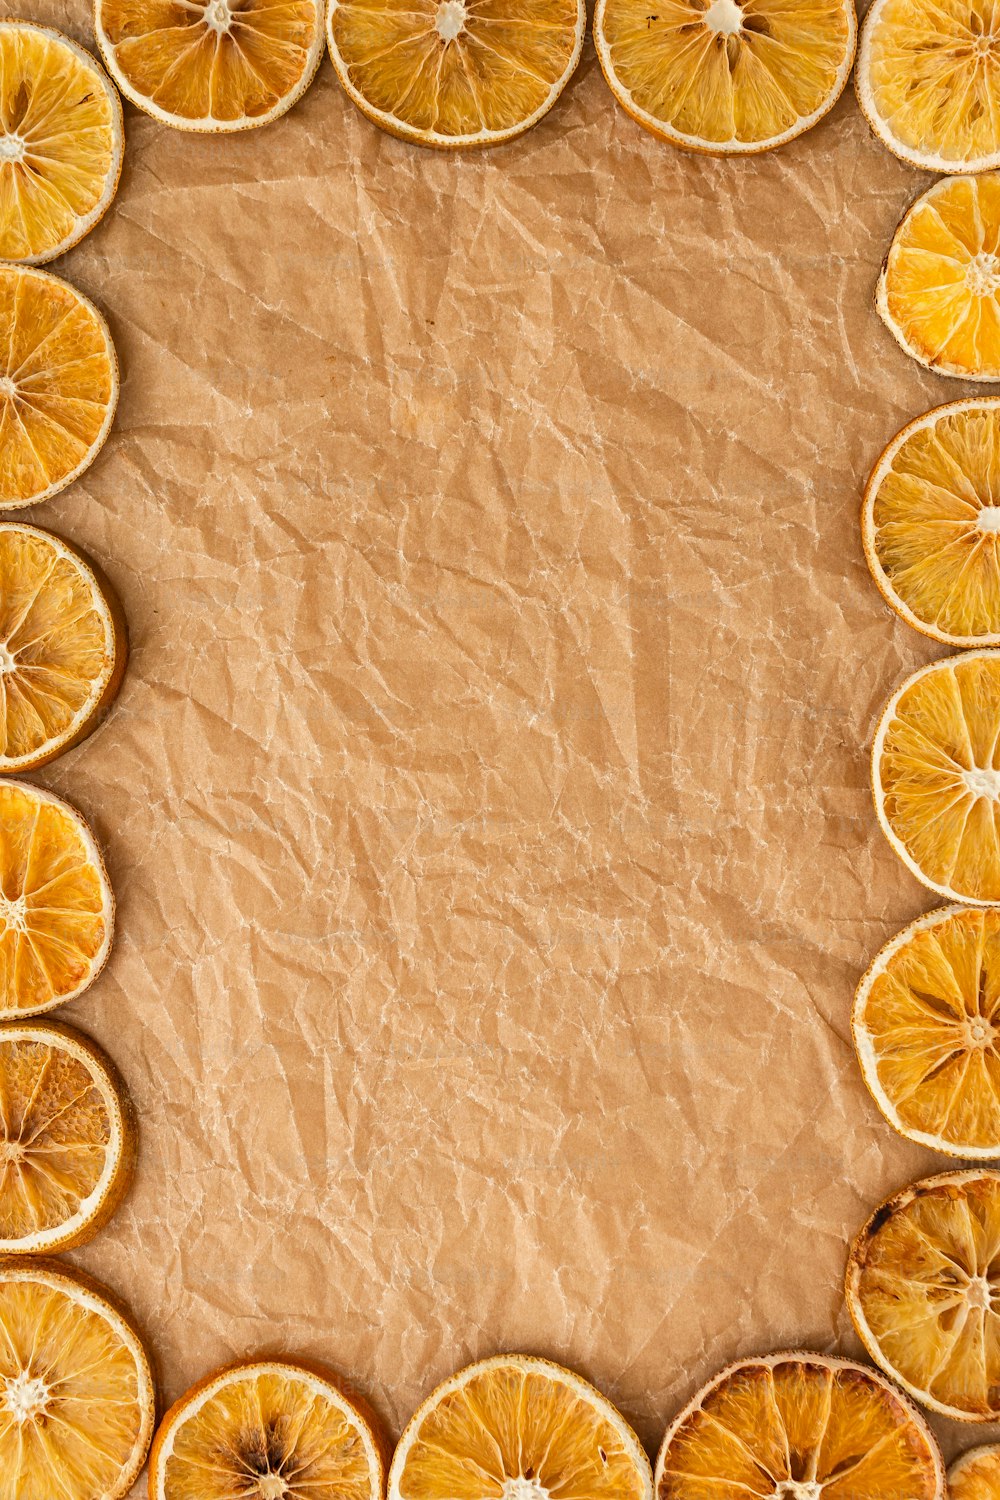 Un grupo de naranjas en rodajas dispuestas en un rectángulo